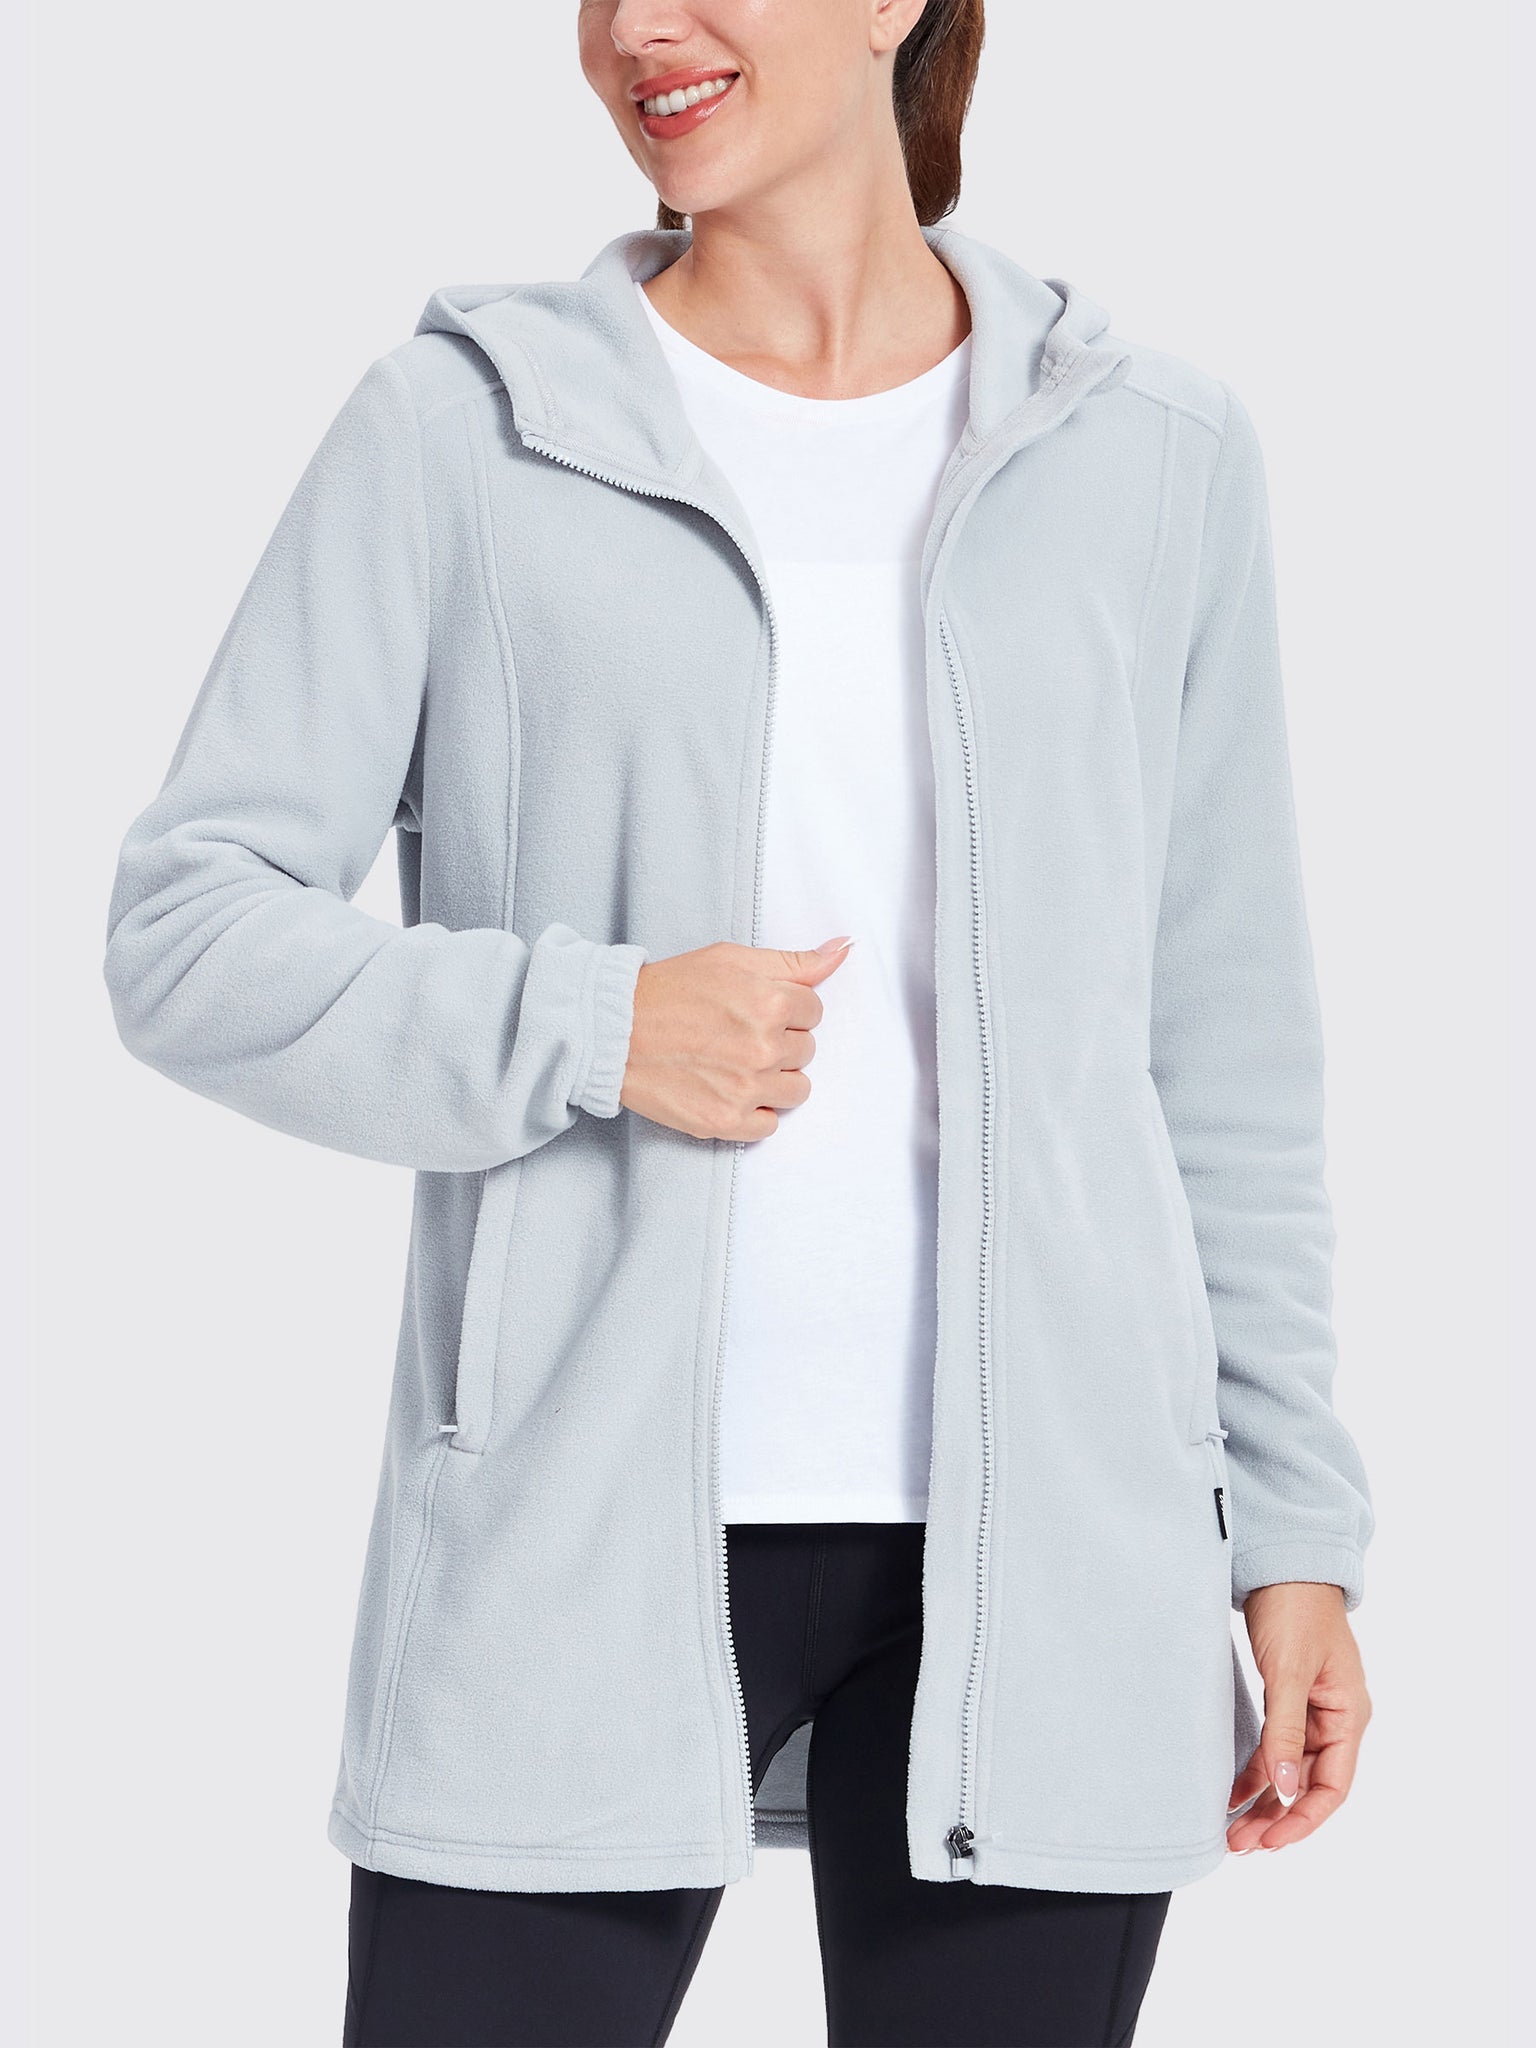 Women's Fleece Full-Zip Jacket Gray2